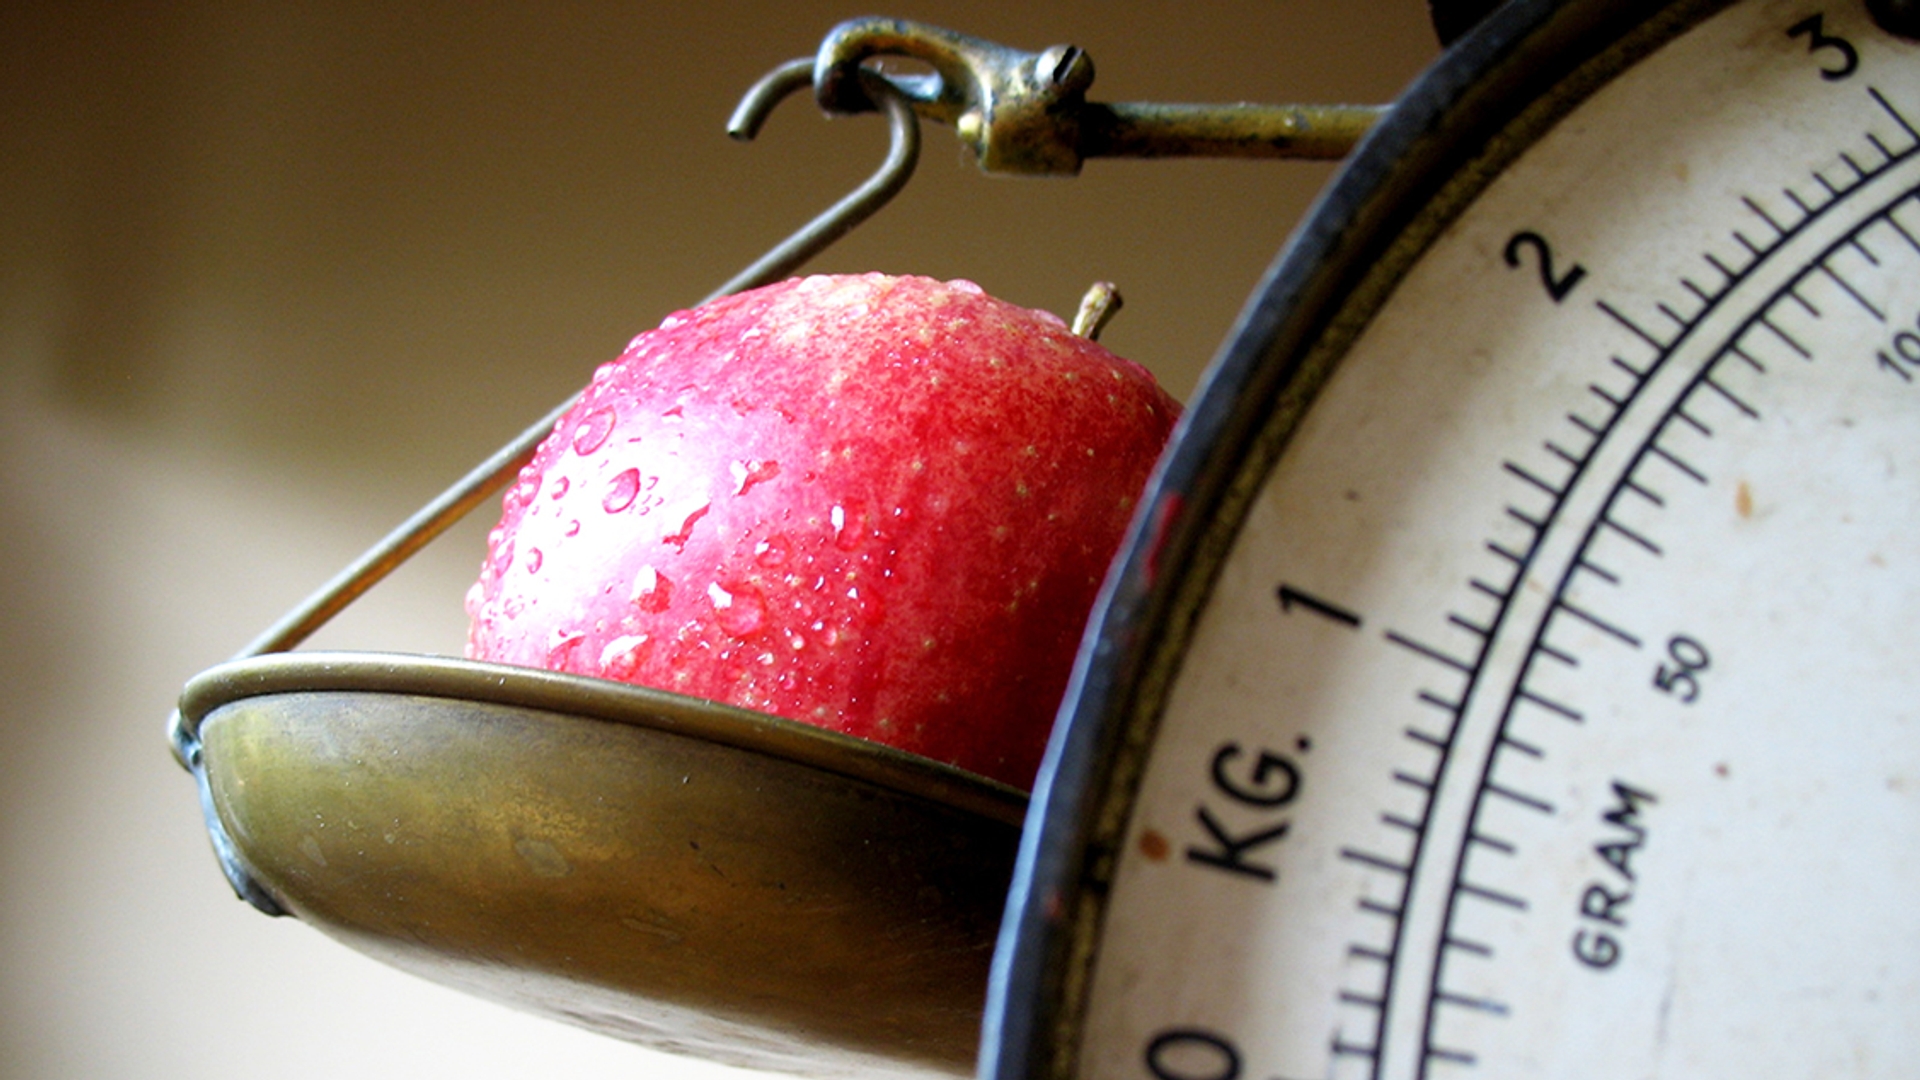 fruit appel gezondheid gewicht dieet leefstijl weegschaal 1127